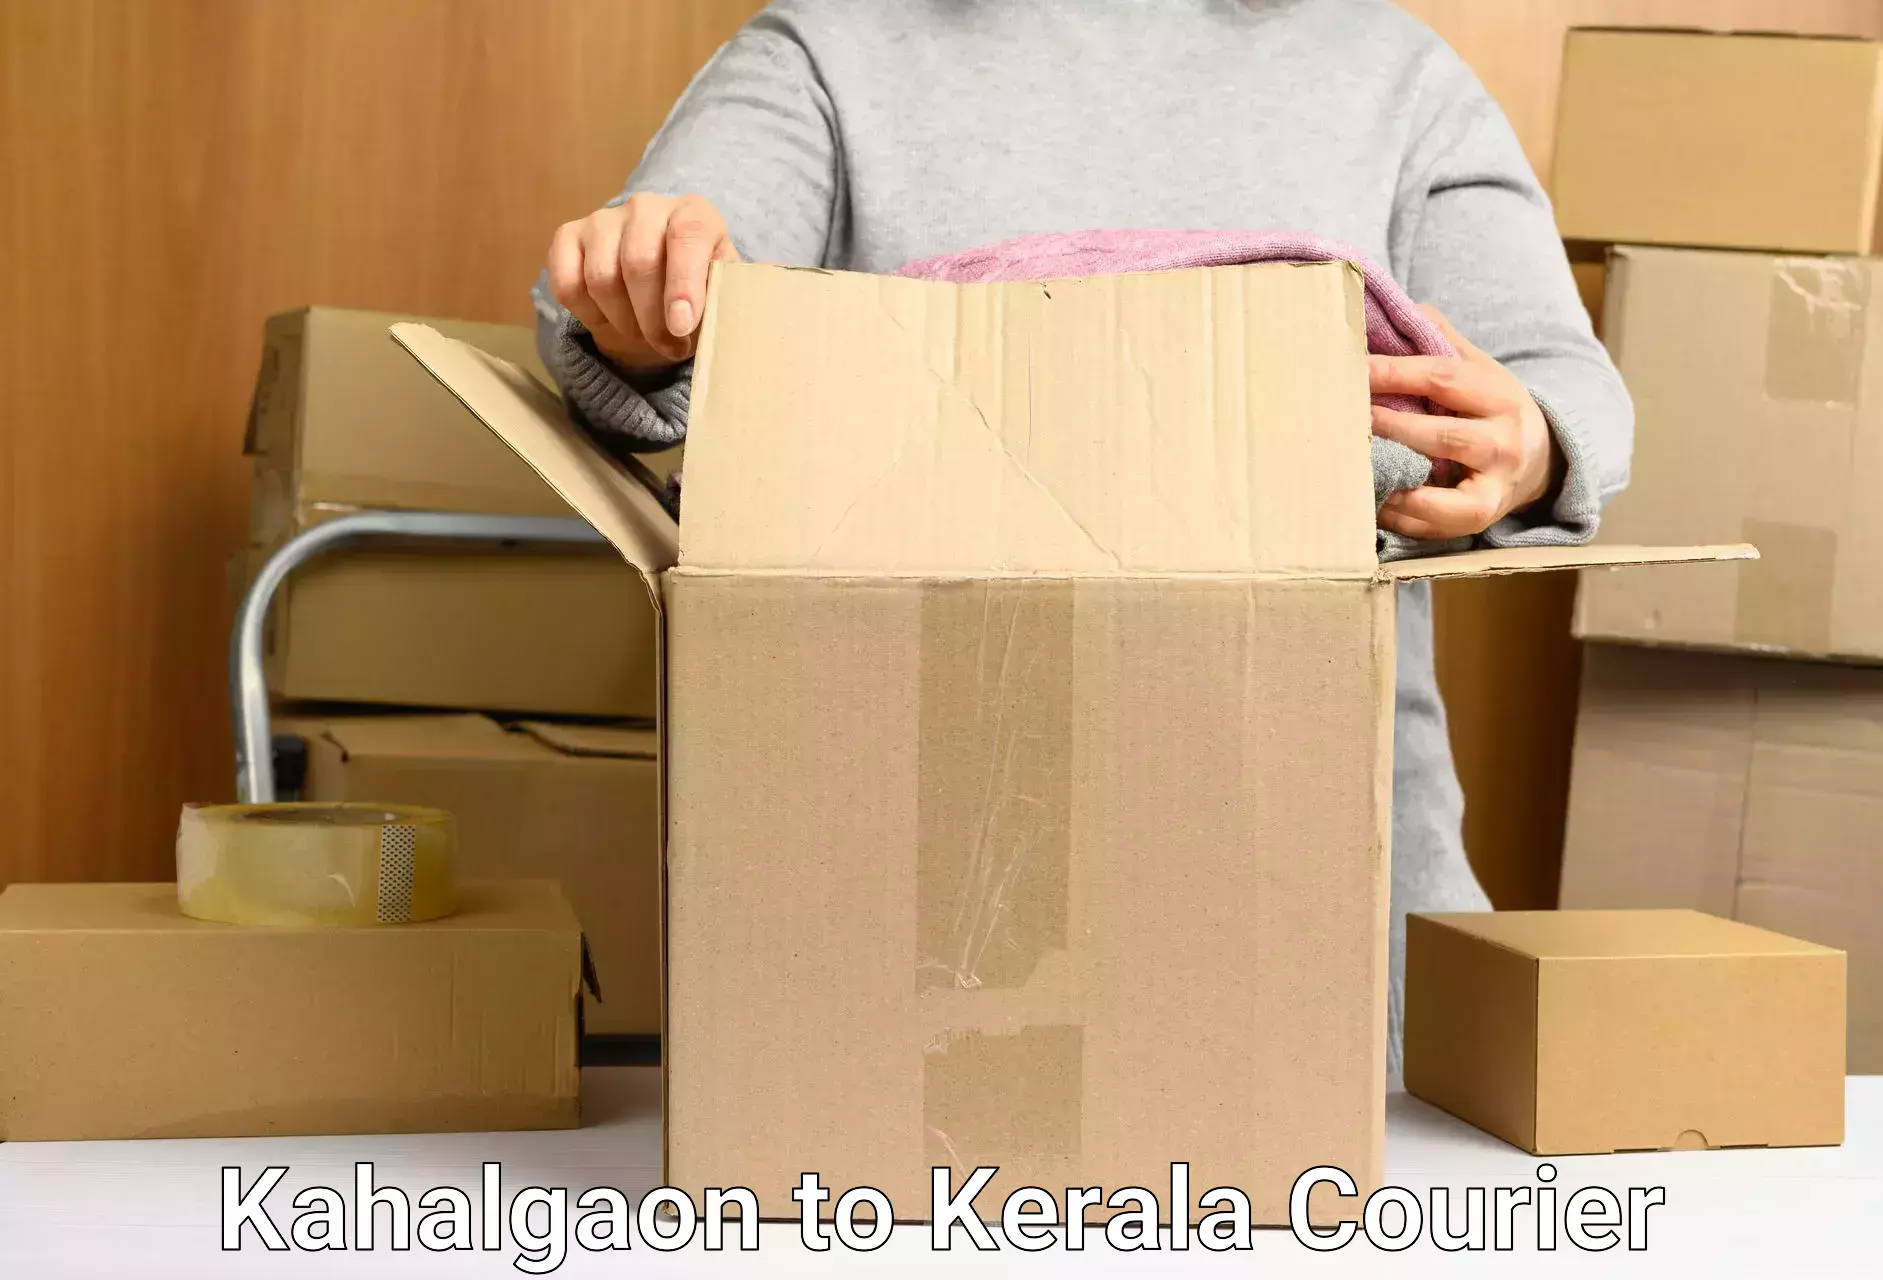 Efficient parcel delivery Kahalgaon to Attingal